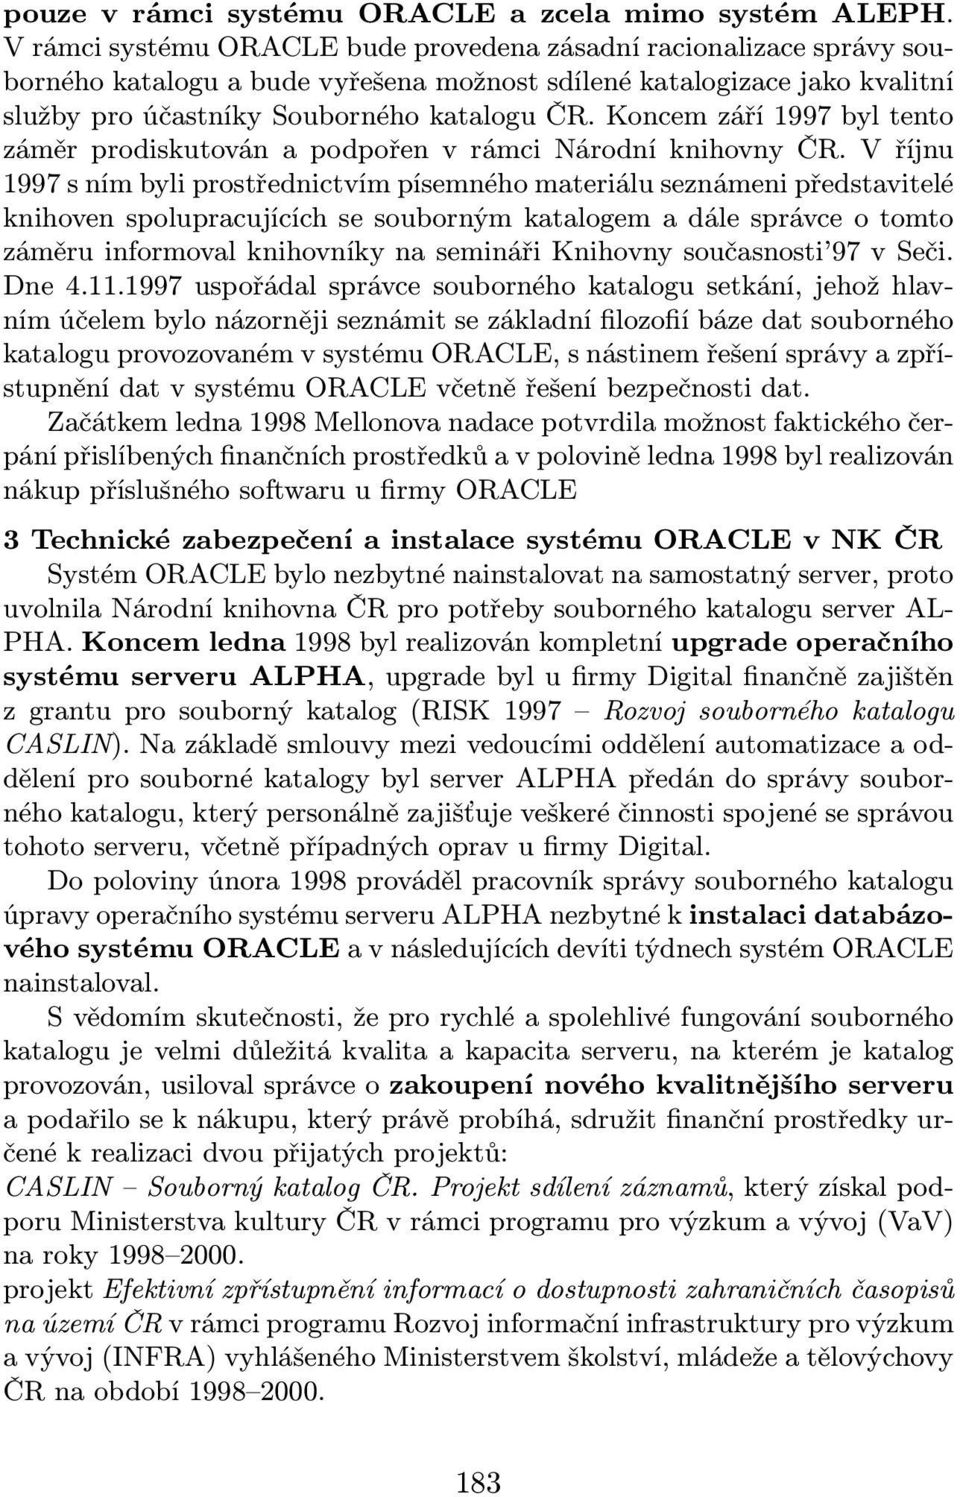 Koncem září 1997 byl tento záměr prodiskutován a podpořen v rámci Národní knihovny ČR.